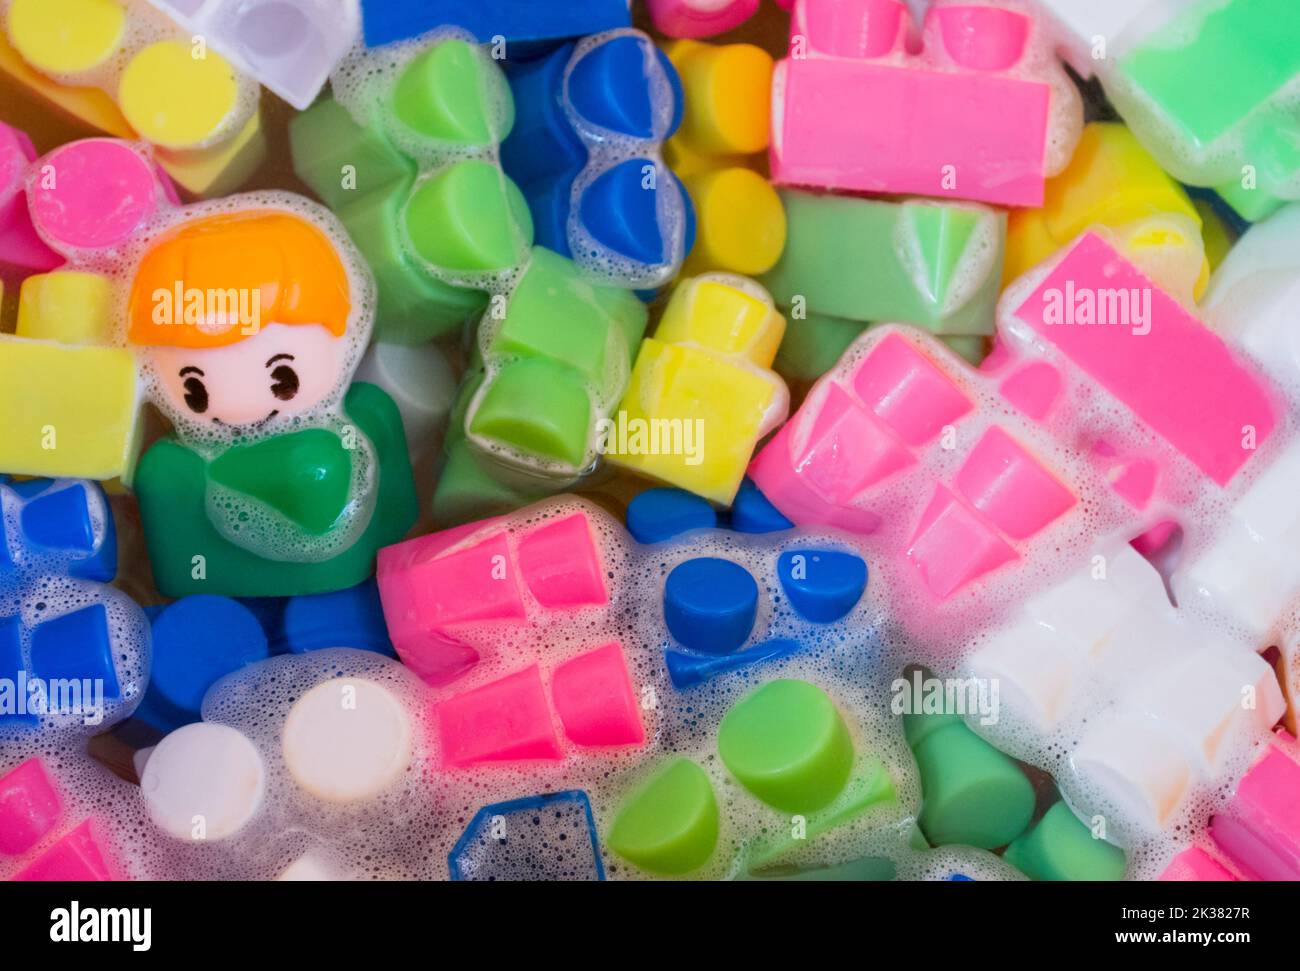 Lavage de jouets pour enfants, blocs de construction en plastique avec figurines. Un petit ami souriant et des cubes colorés flottent dans l'eau mousseuse. Le concept o Banque D'Images